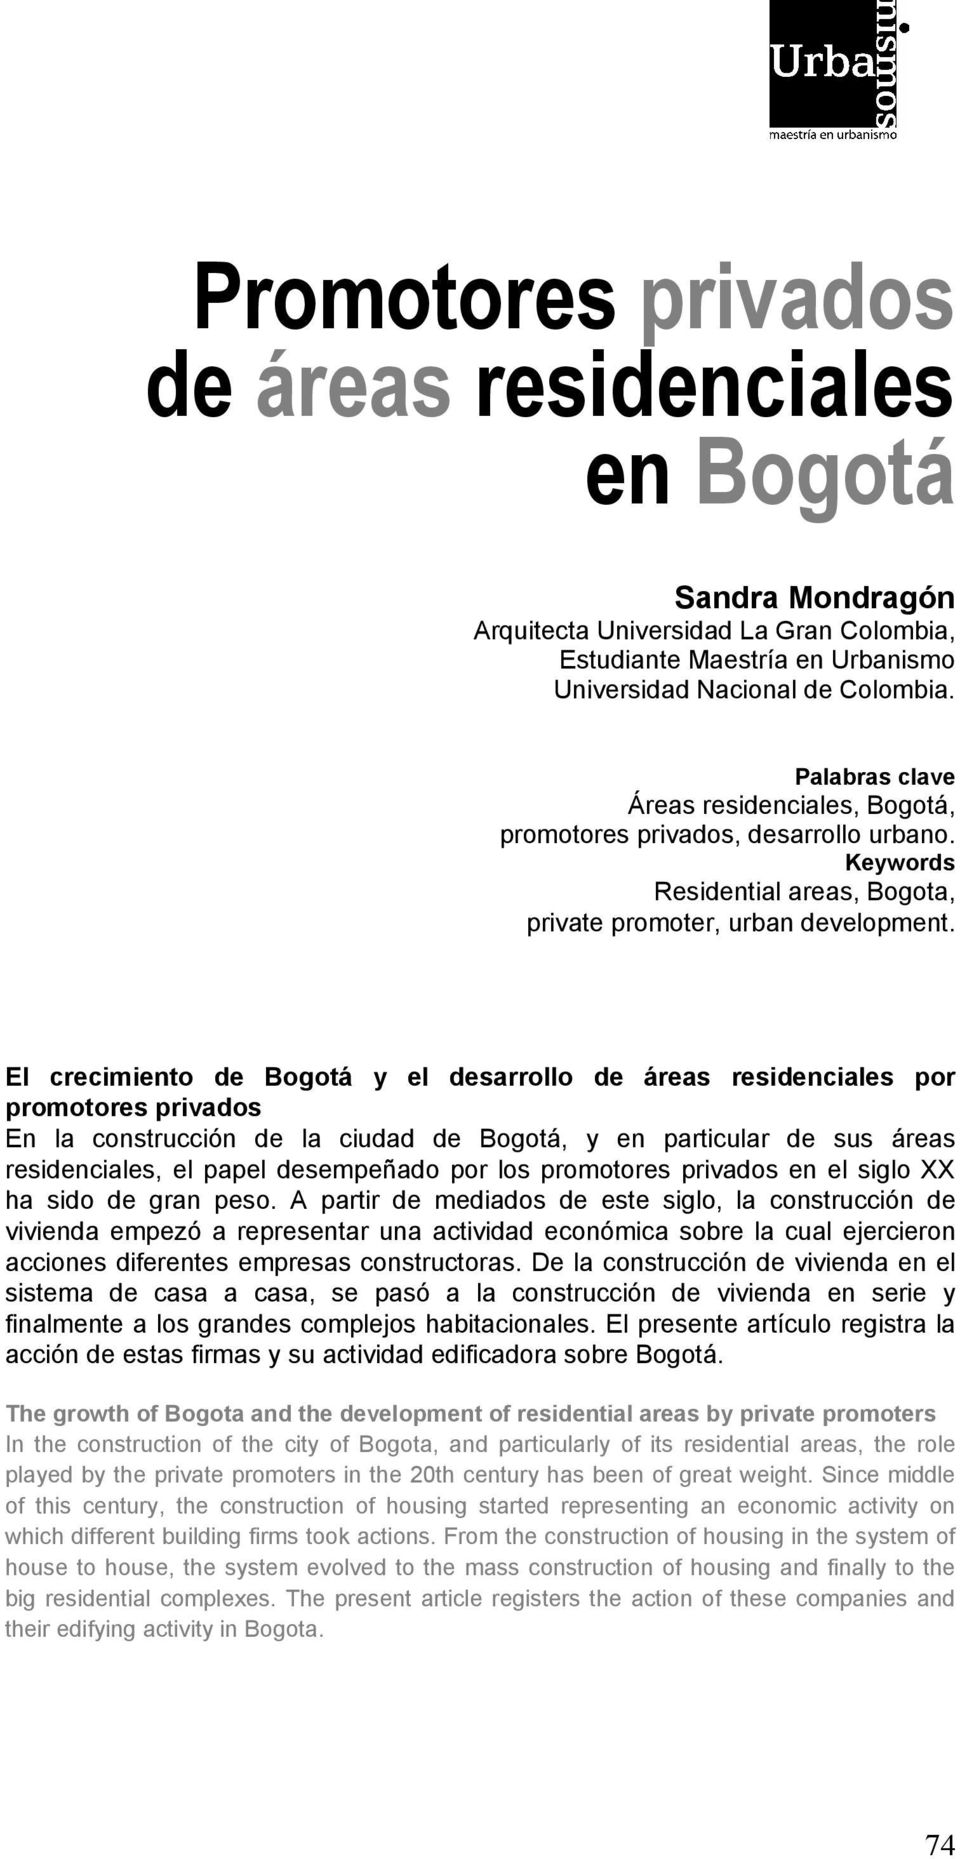 El crecimiento de Bogotá y el desarrollo de áreas residenciales por promotores privados En la construcción de la ciudad de Bogotá, y en particular de sus áreas residenciales, el papel desempeñado por